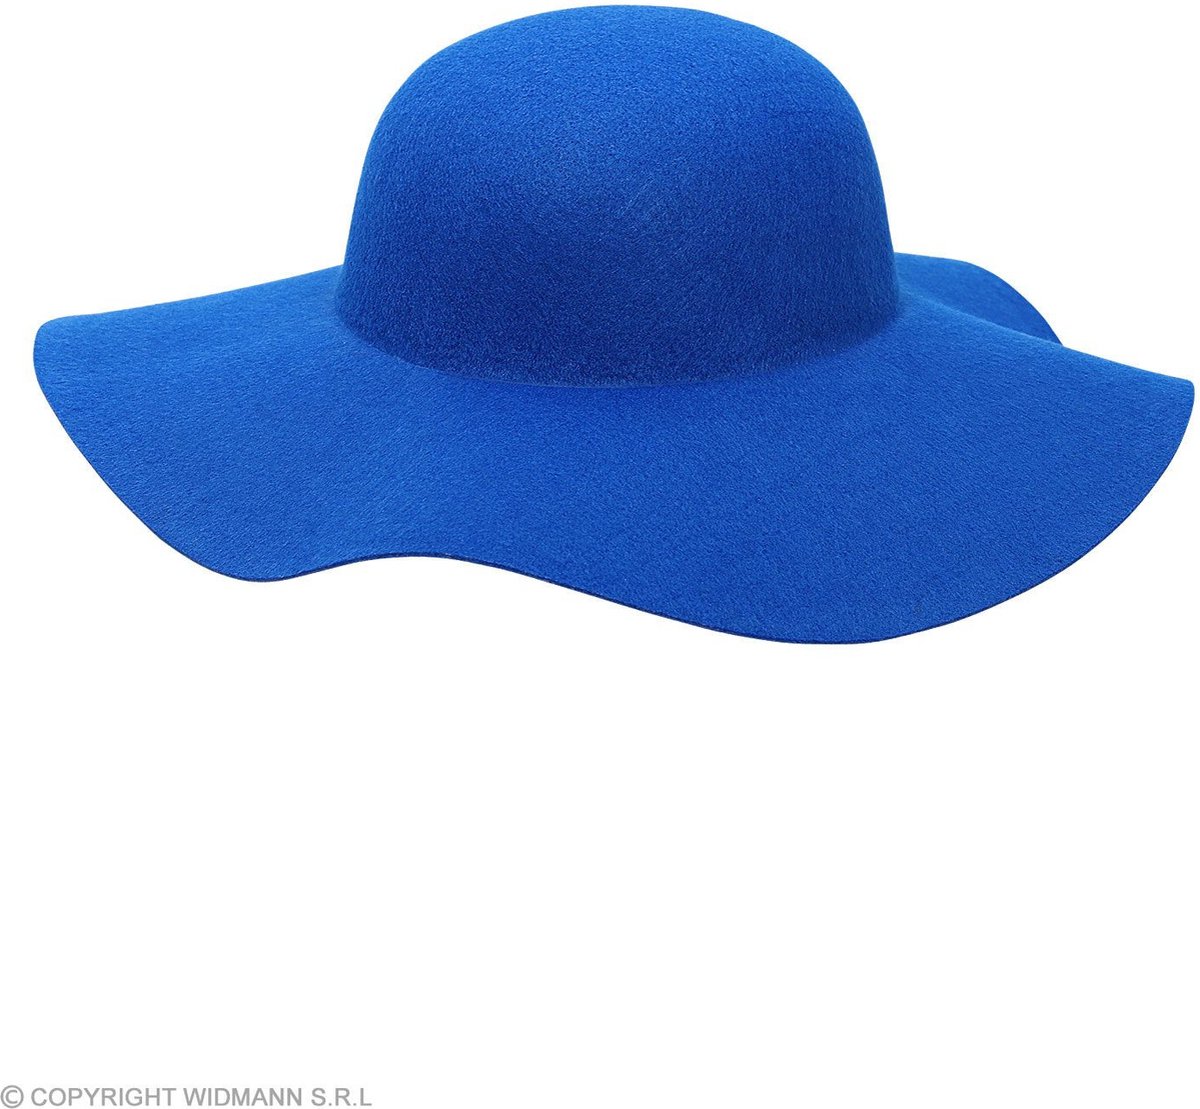 Widmann -Blauwe Hippie Hoed Brede Rand - blauw - Carnavalskleding - Verkleedkleding